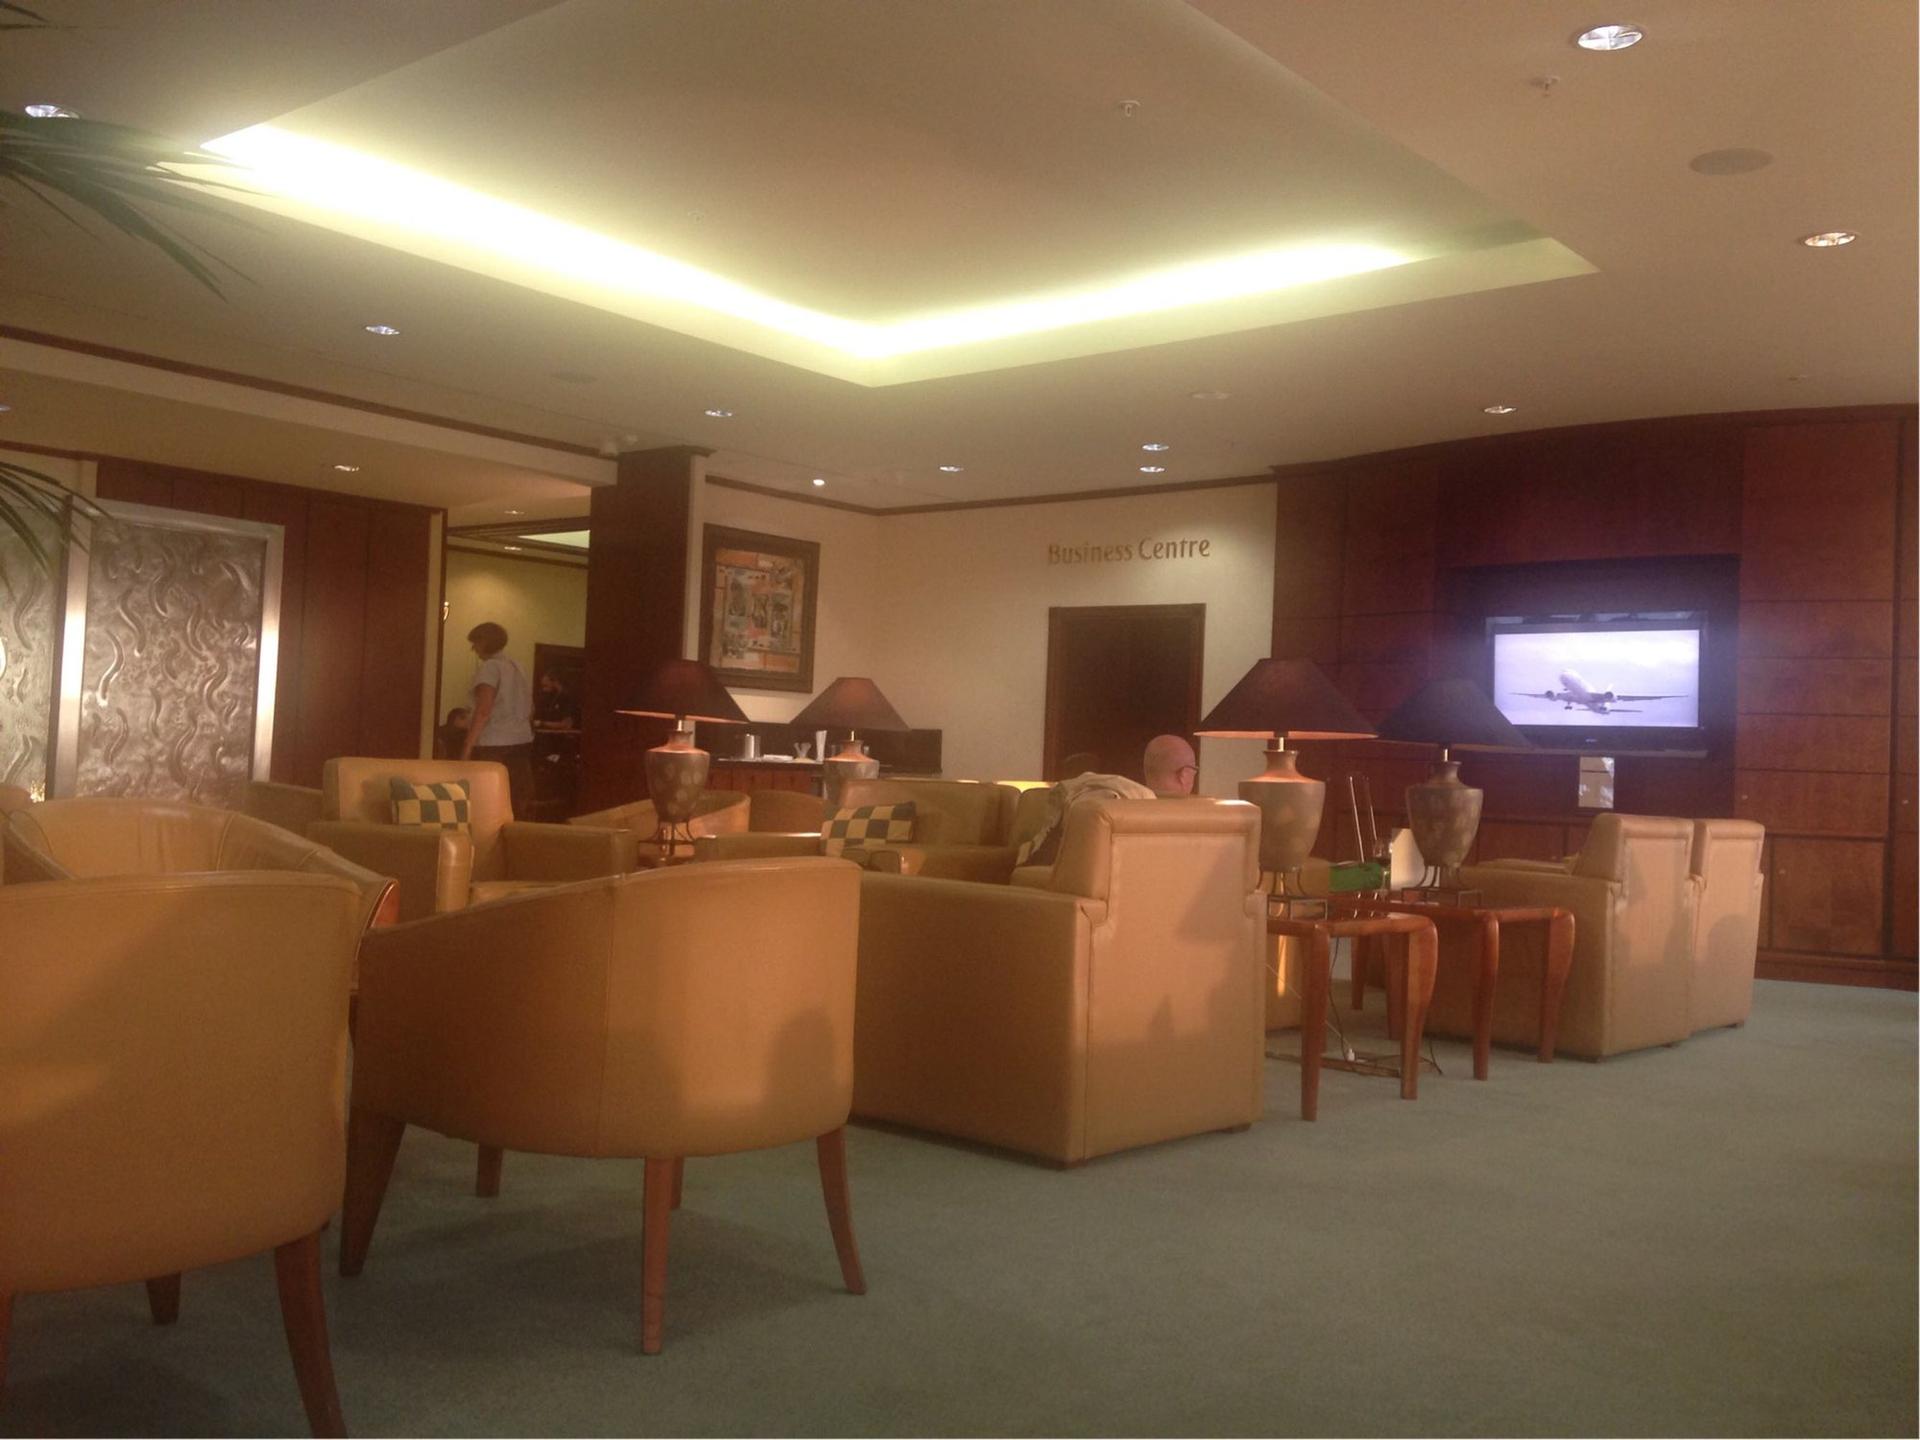 The Emirates Lounge image 2 of 2